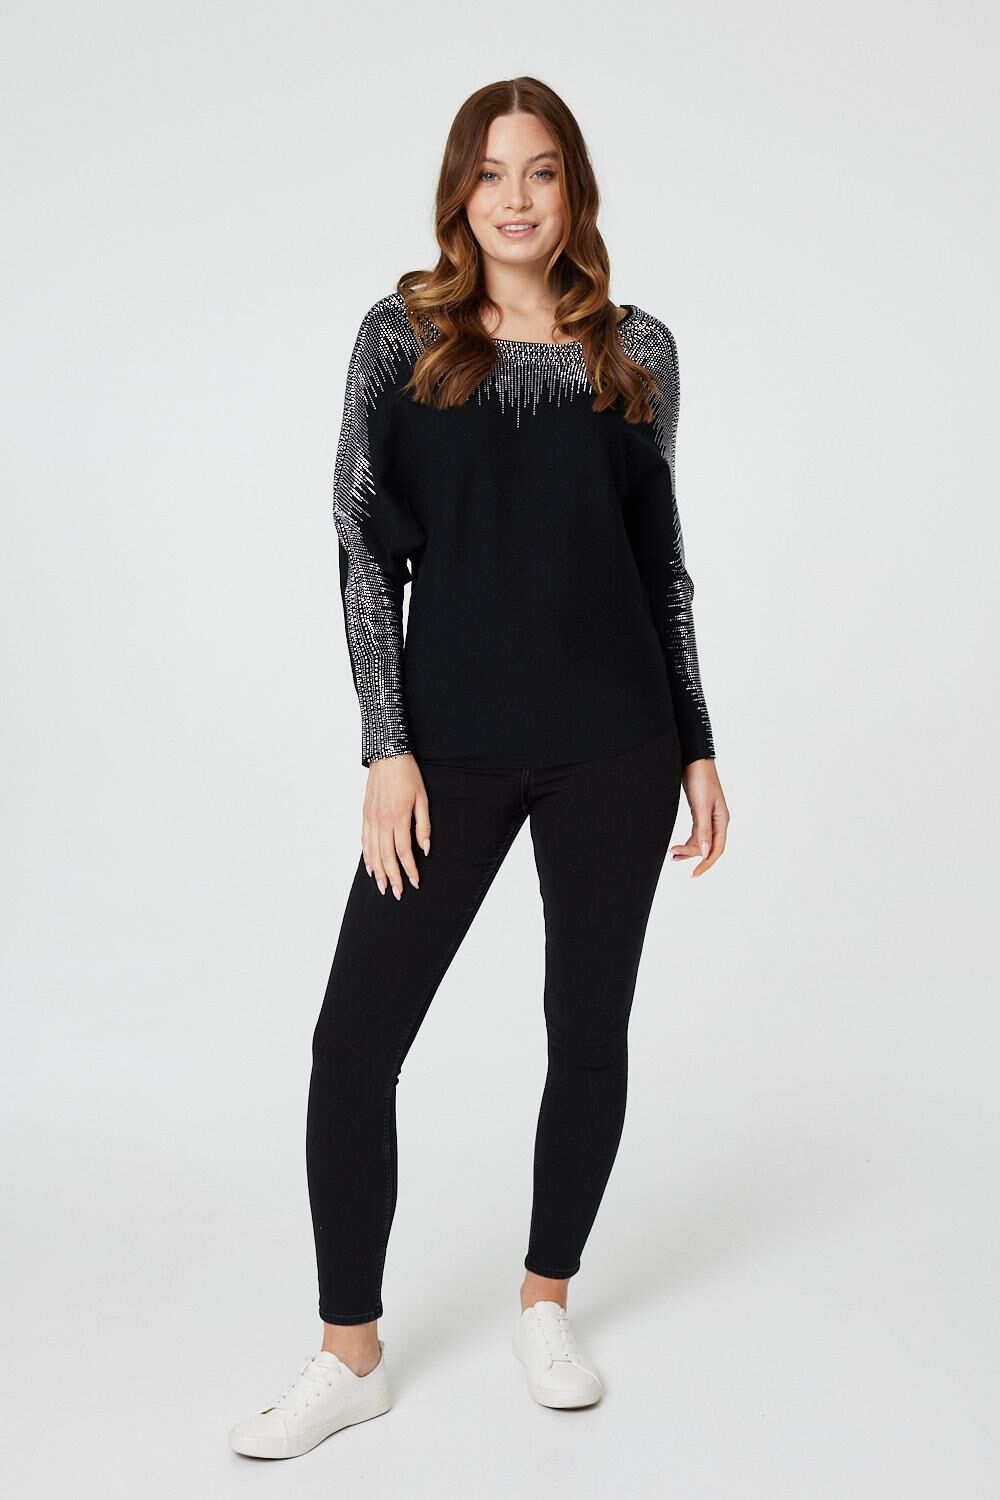 Izabel London Black - Embellished Diamante Knit Jumper, Size: 12